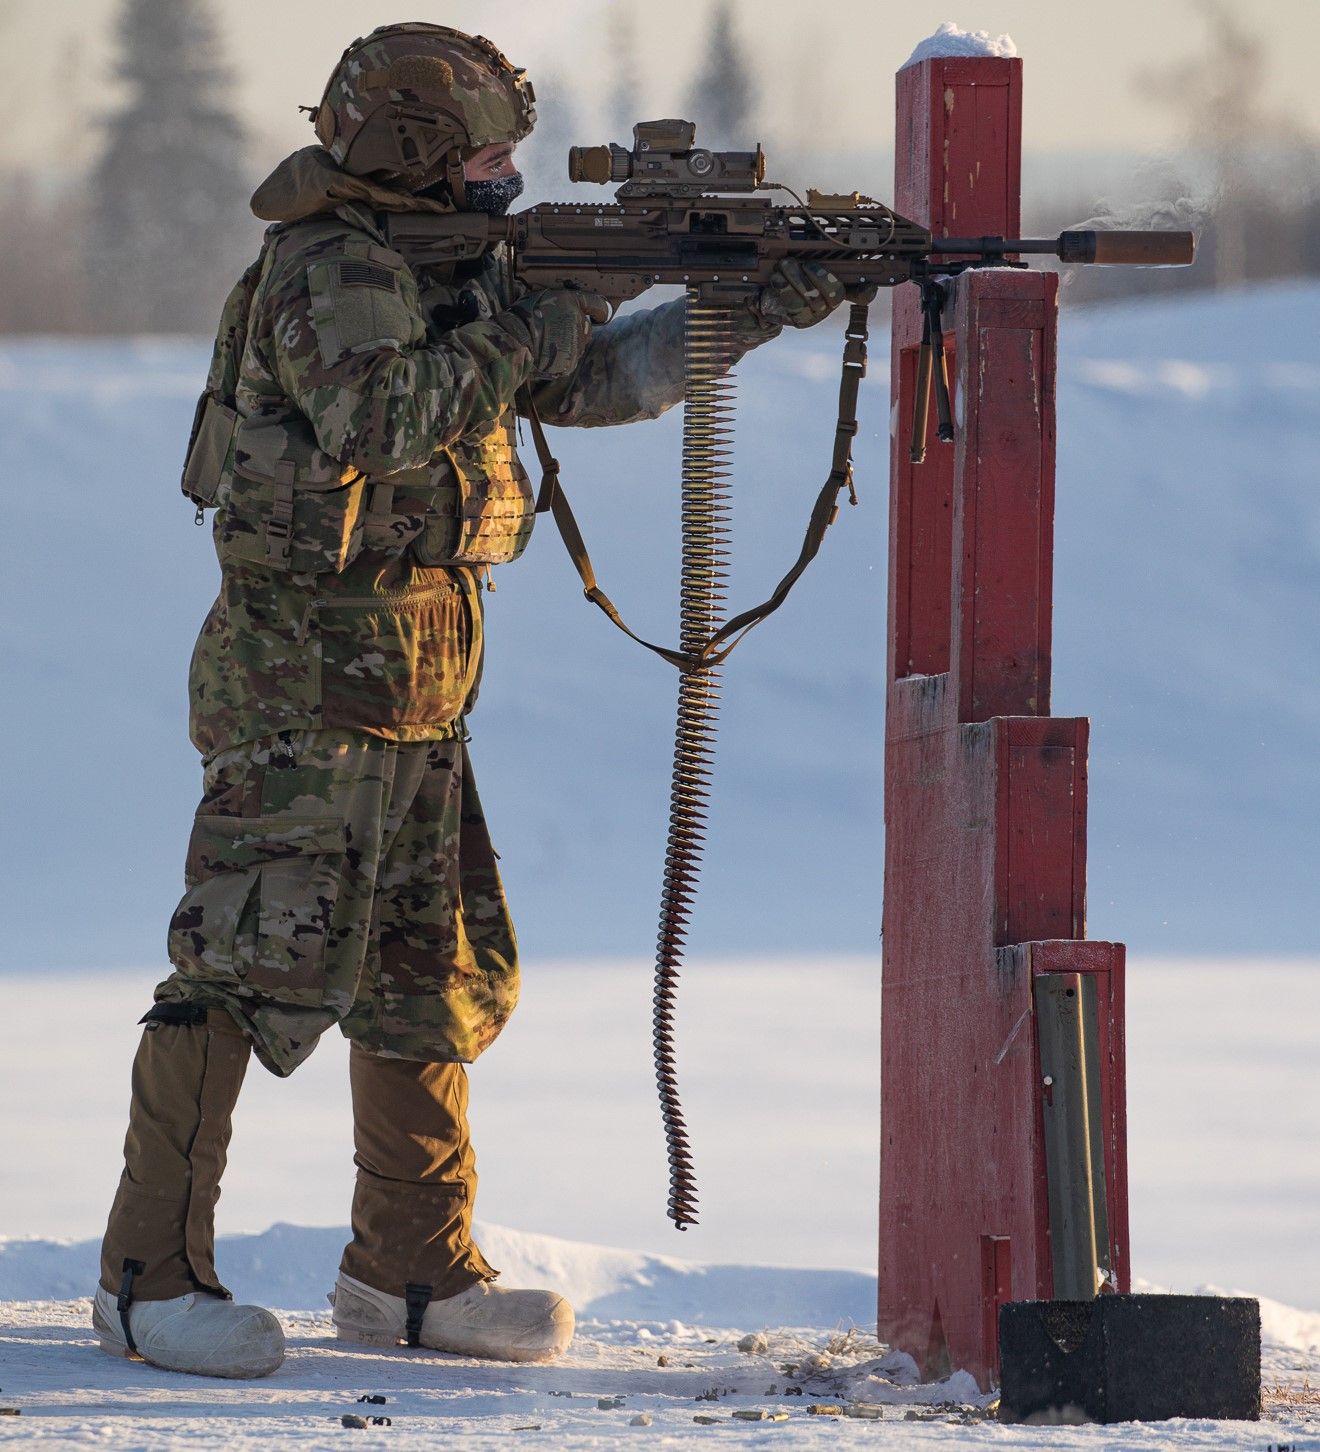 a soldier using a machine to shoot a gun